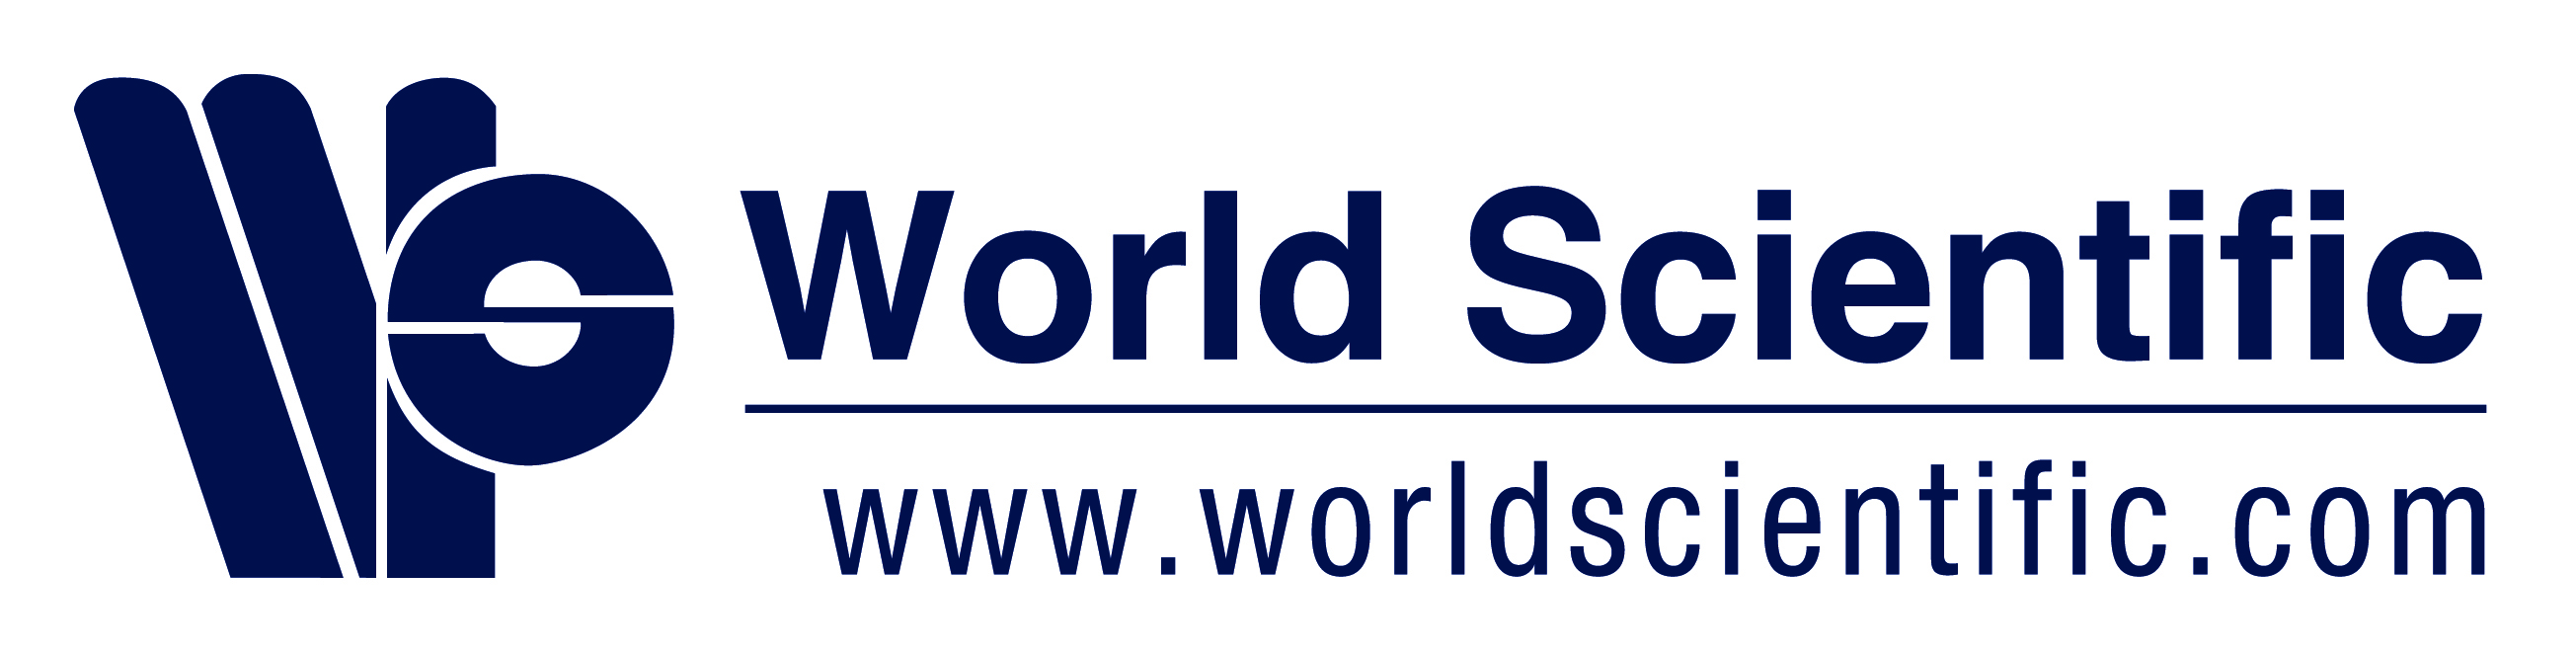 WSPC logo-1.jpg